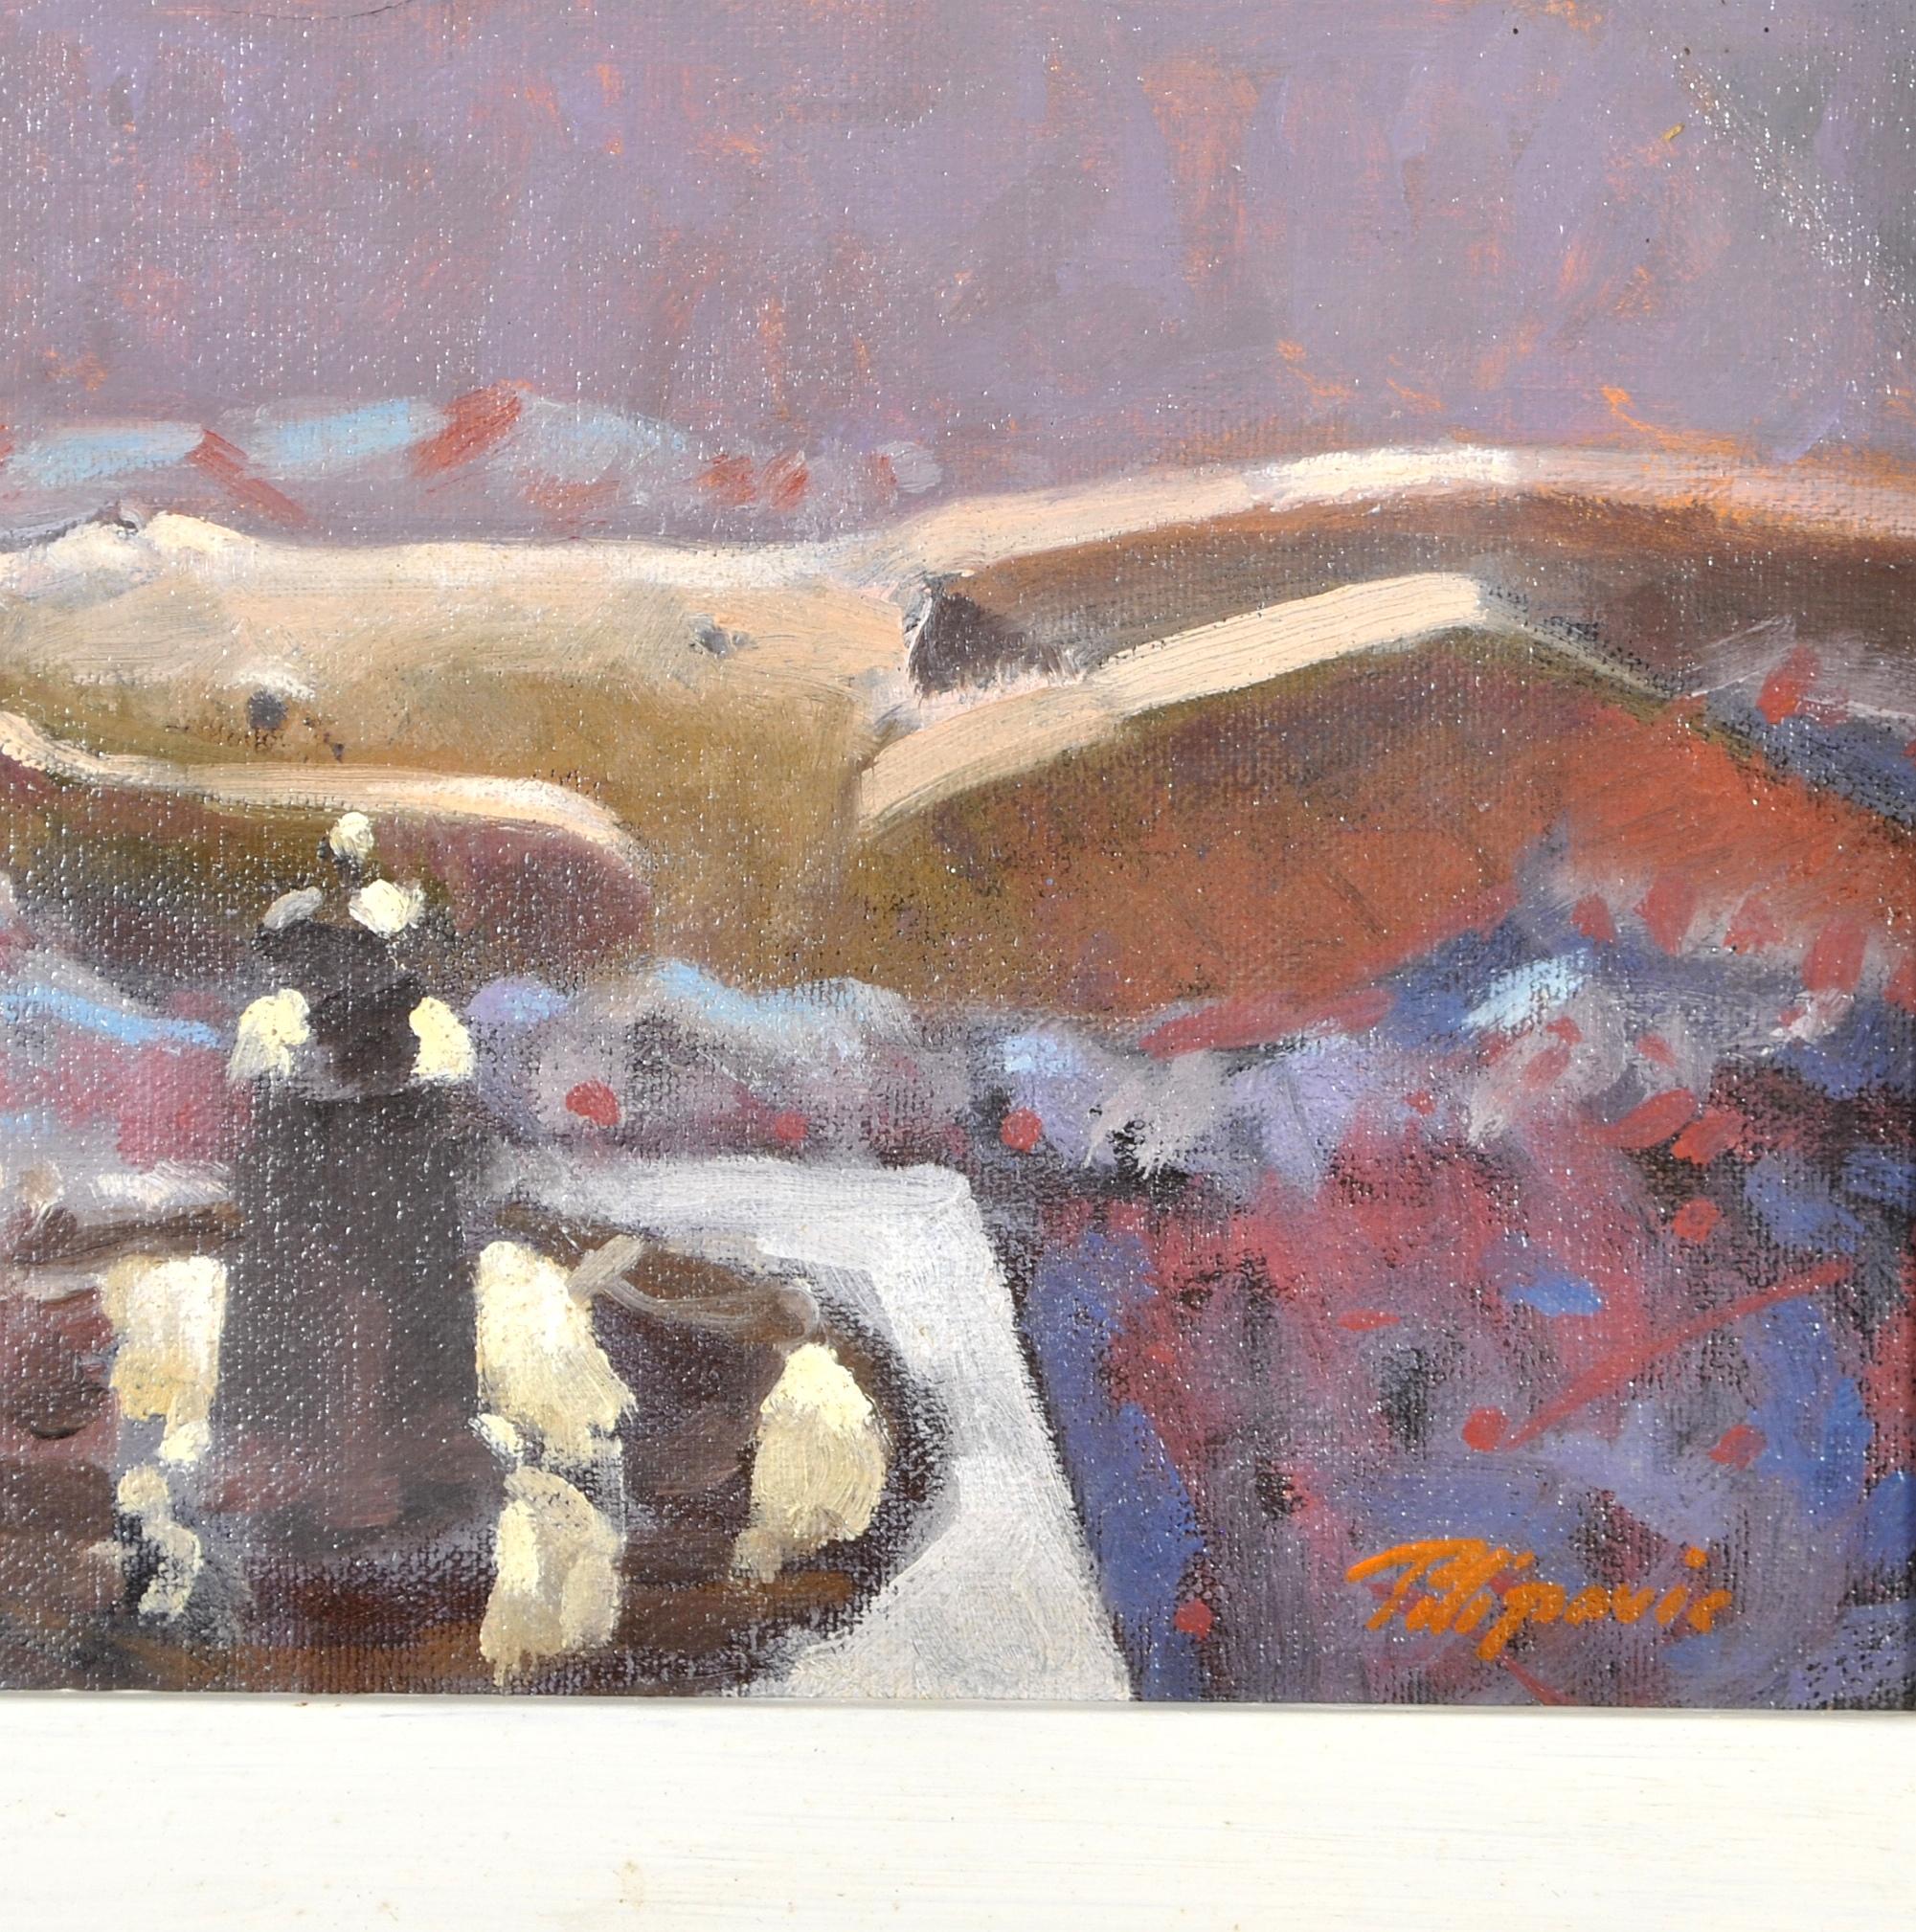 Une belle huile impressionniste sur panneau de Zlatan Pilipovic représentant une femme nue allongée sur une couverture dans l'atelier de l'artiste. L'œuvre est très bien peinte avec une merveilleuse lumière pommelée qui est typique de l'artiste. Un